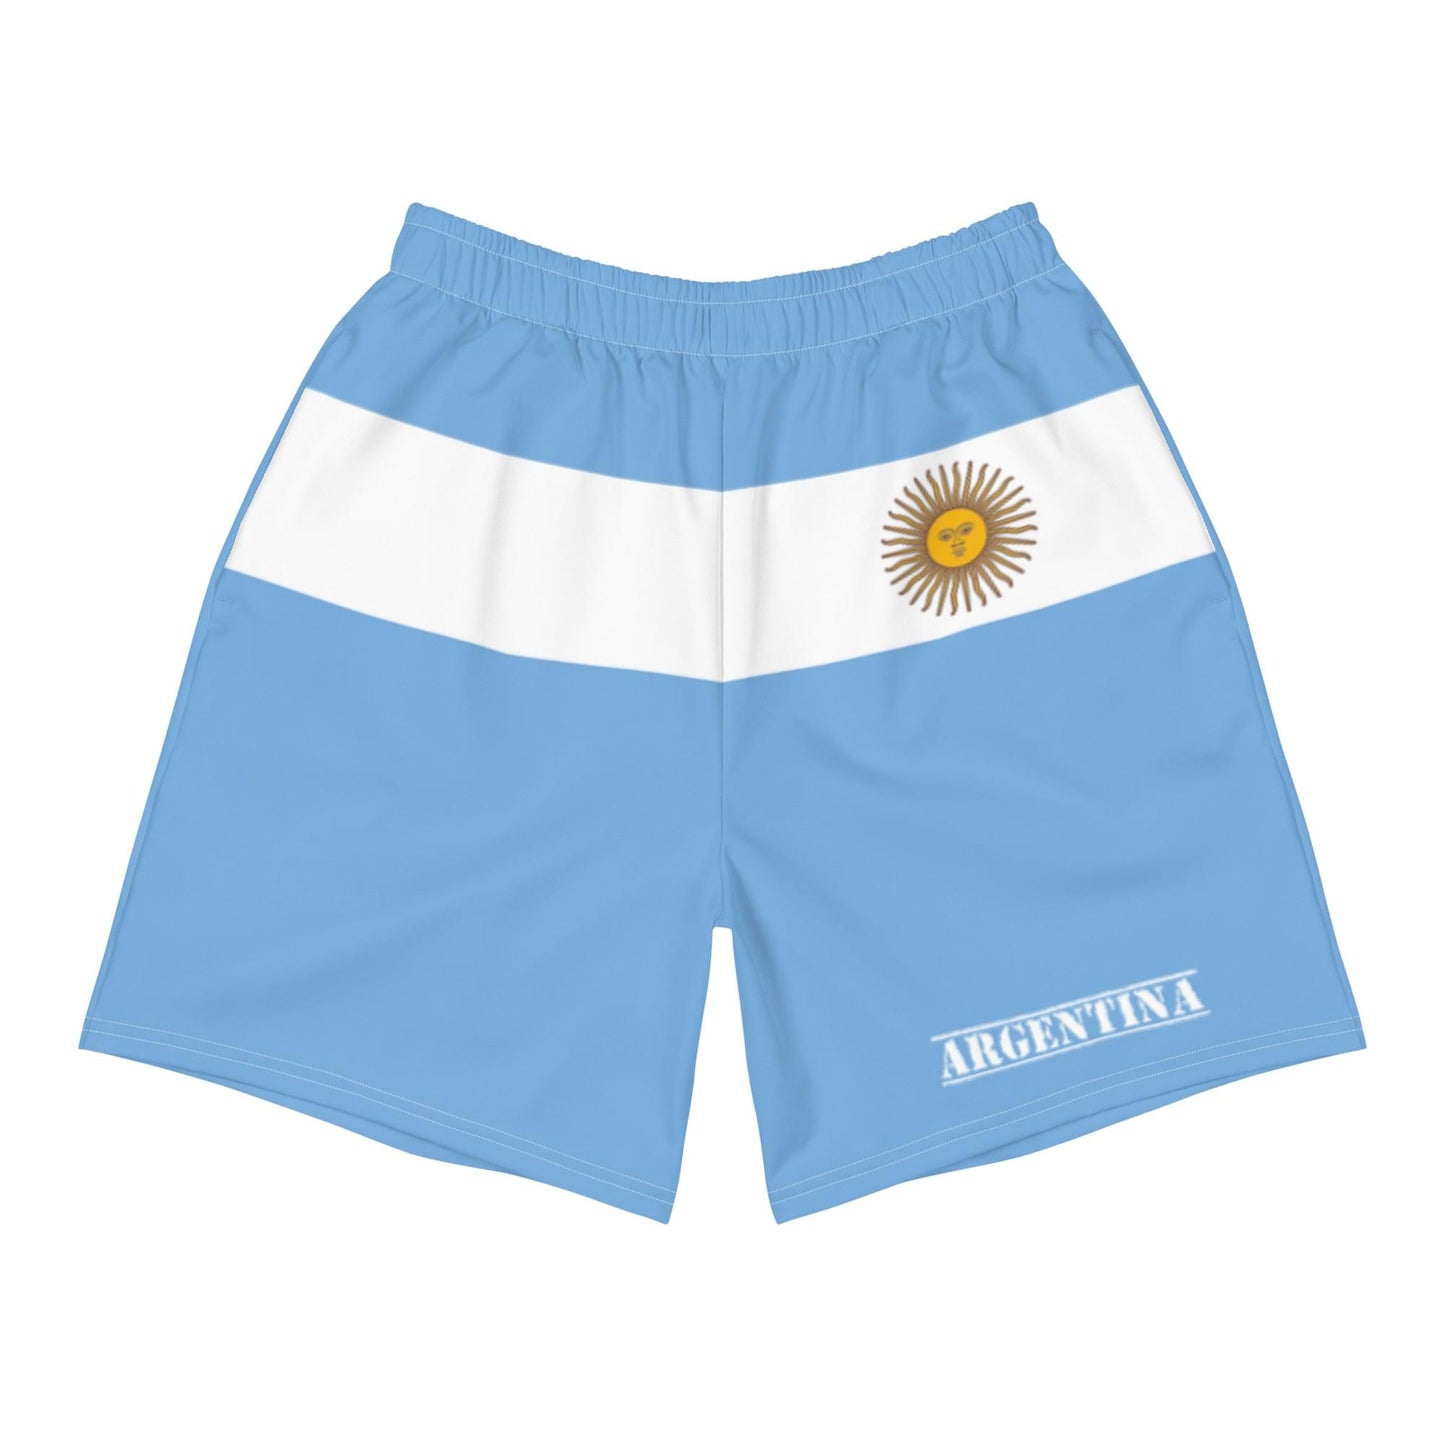 阿根廷男士短裤 / 阿根廷服装风格 / 再生聚酯纤维